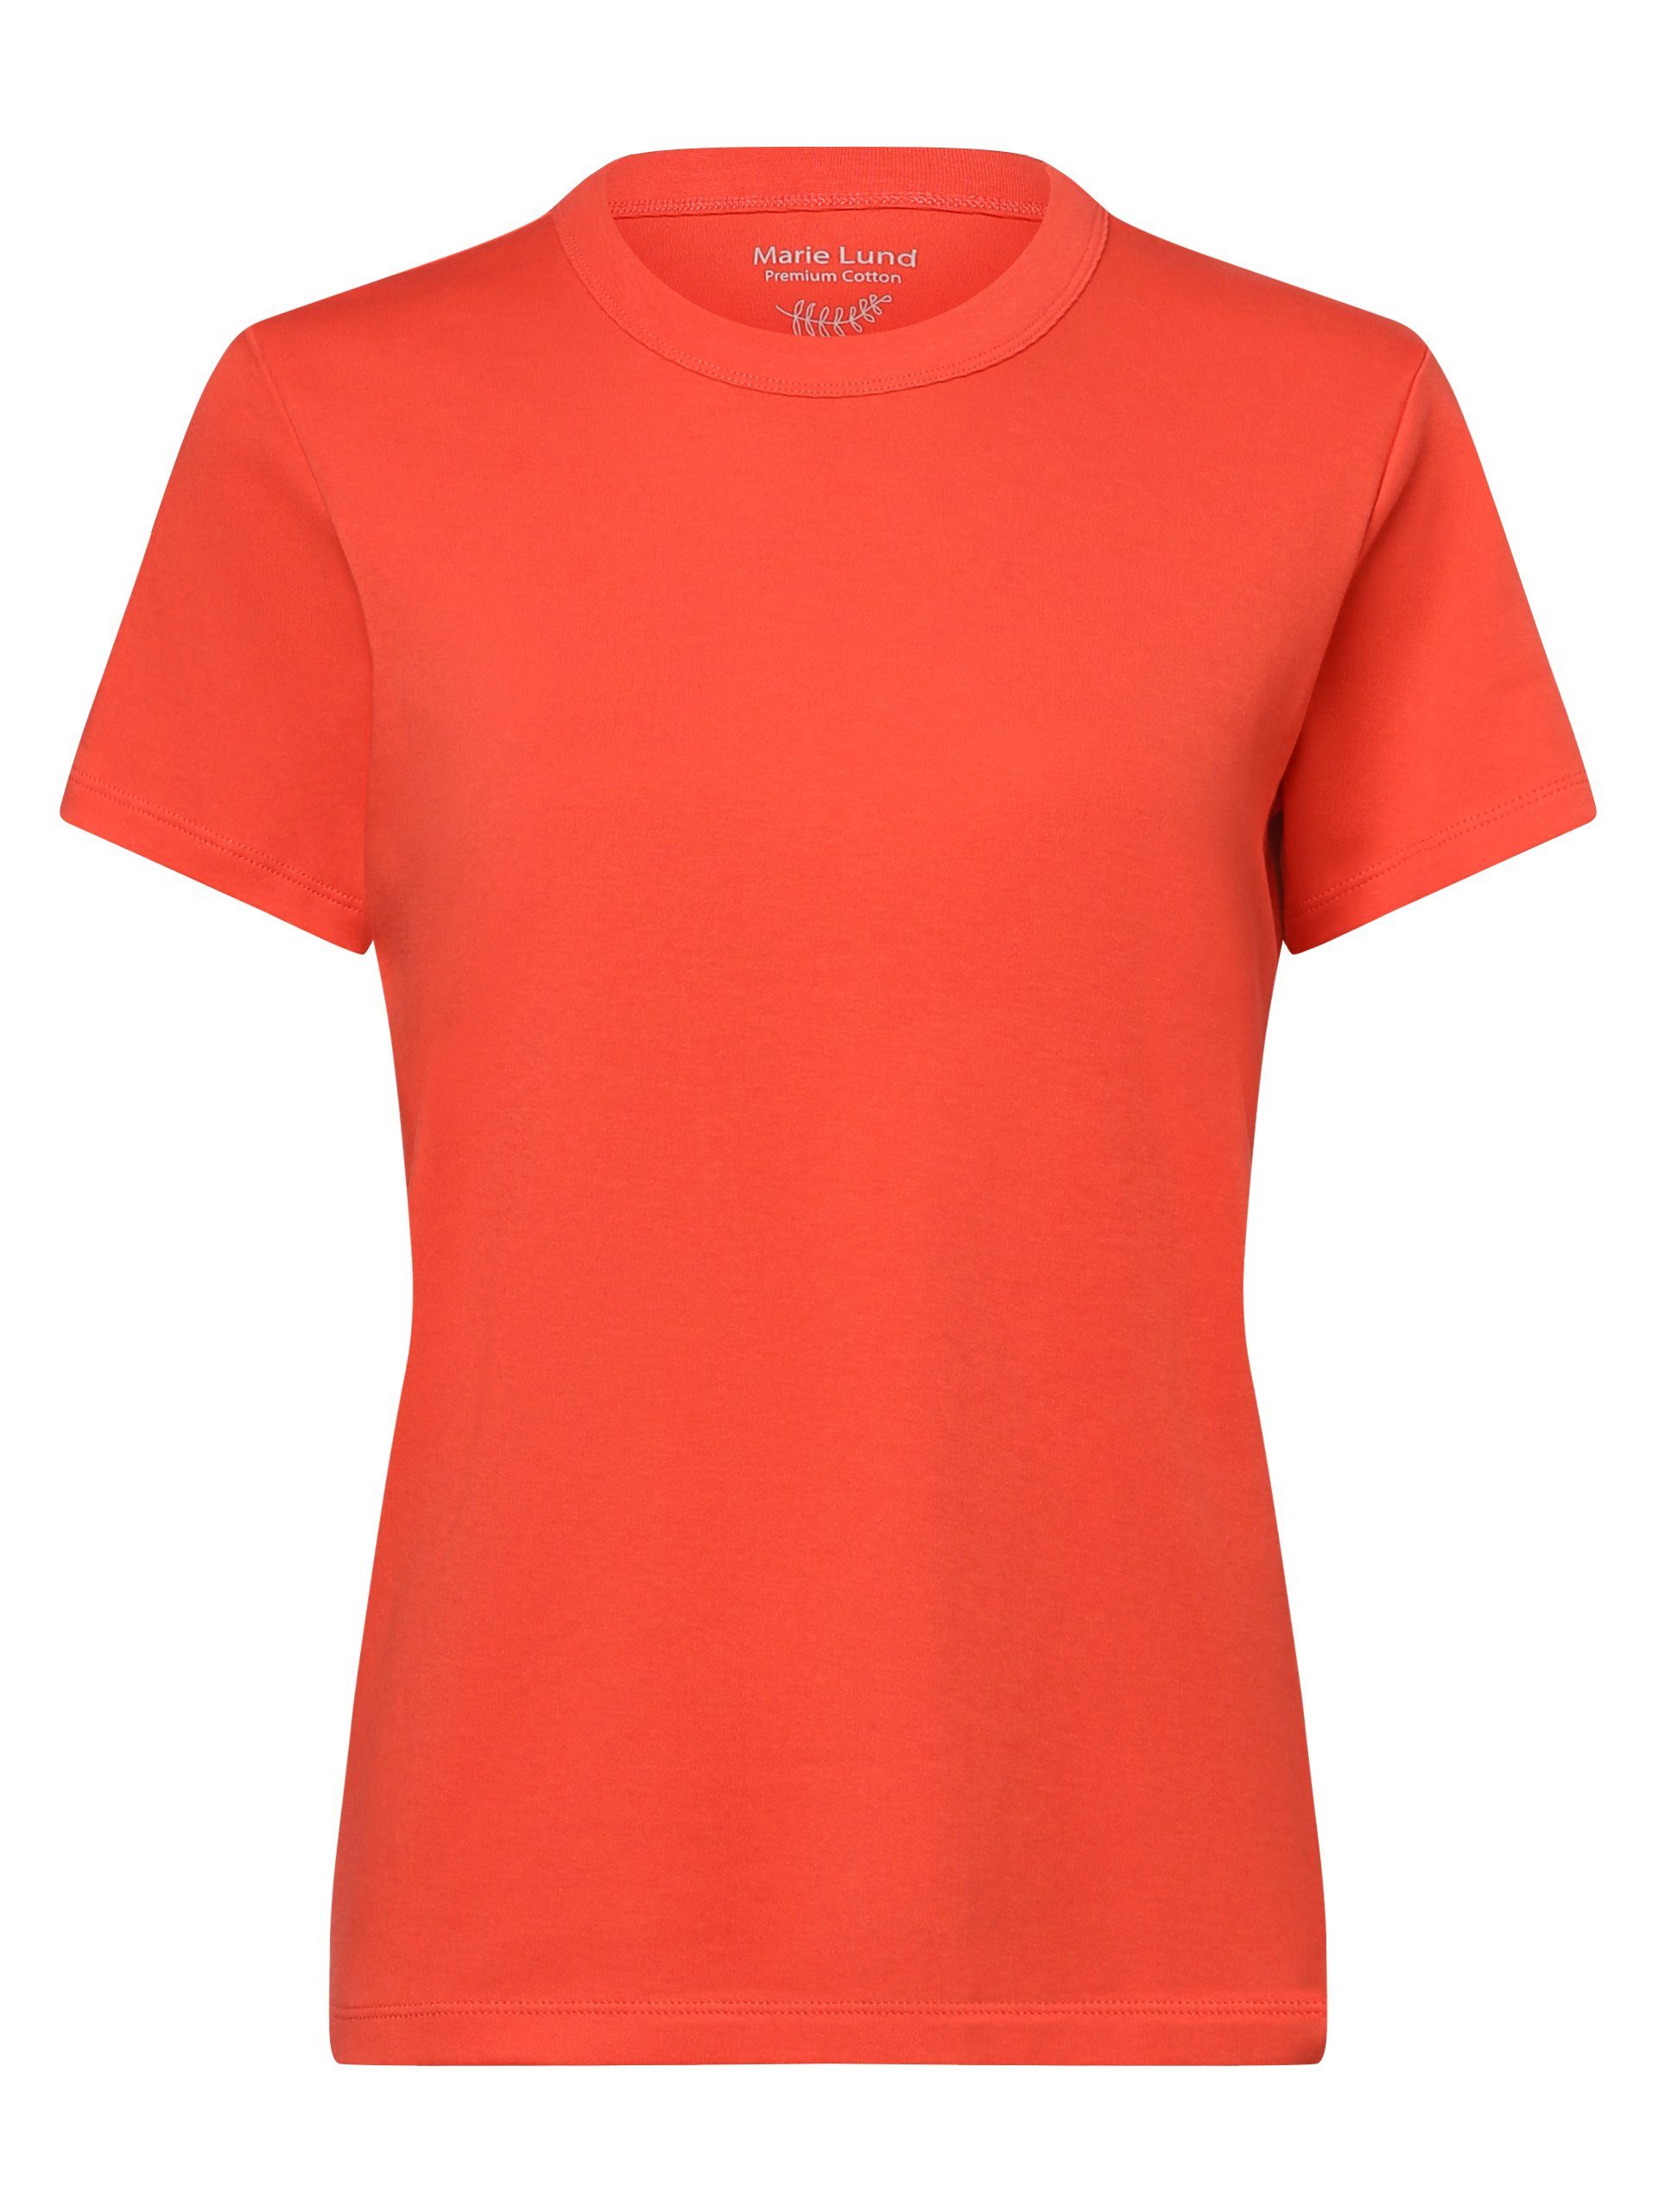 Marie Lund T-Shirt koralle